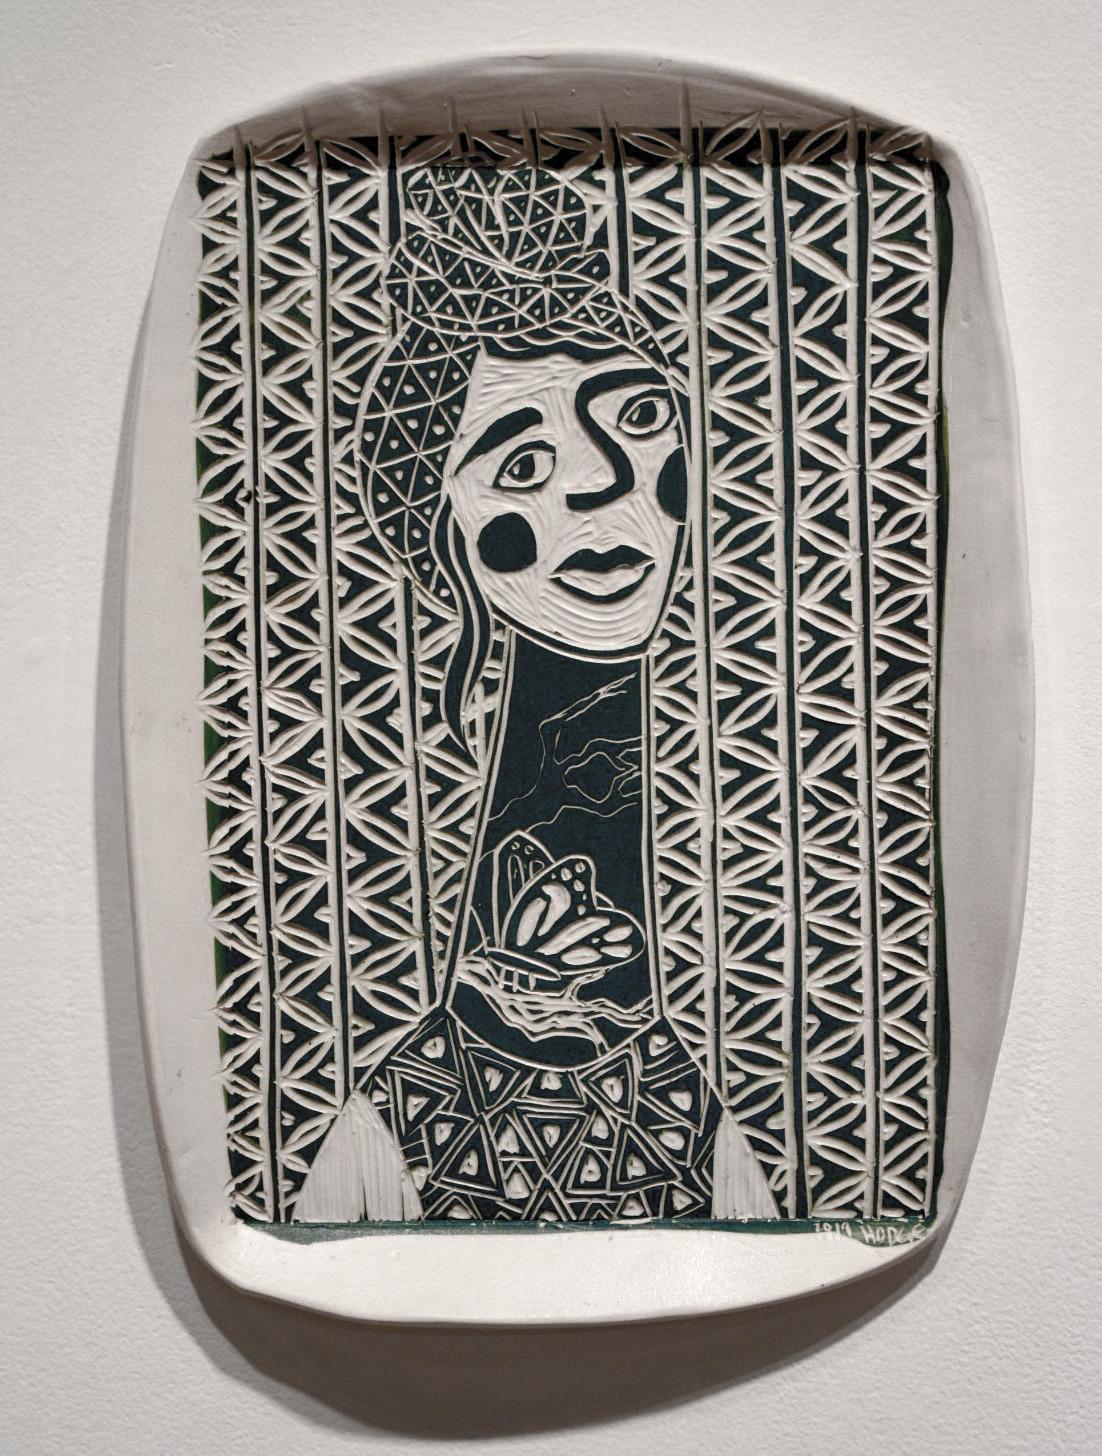 Stairway to Nowhere Girl, 2019 par Alex Hodge
Porcelaine sculptée
16 H in x 12.5 W in x 0.75 D in
Unique en son genre

Ses assiettes poétiques en porcelaine examinent et réimaginent l'histoire de l'art d'une manière qui valorise les femmes, non